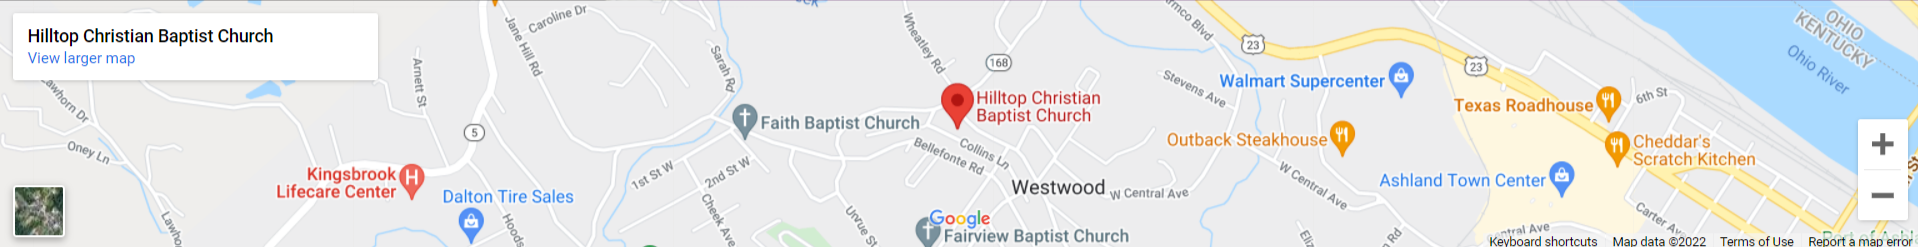 Hilltop Christian Baptist Church Map 1